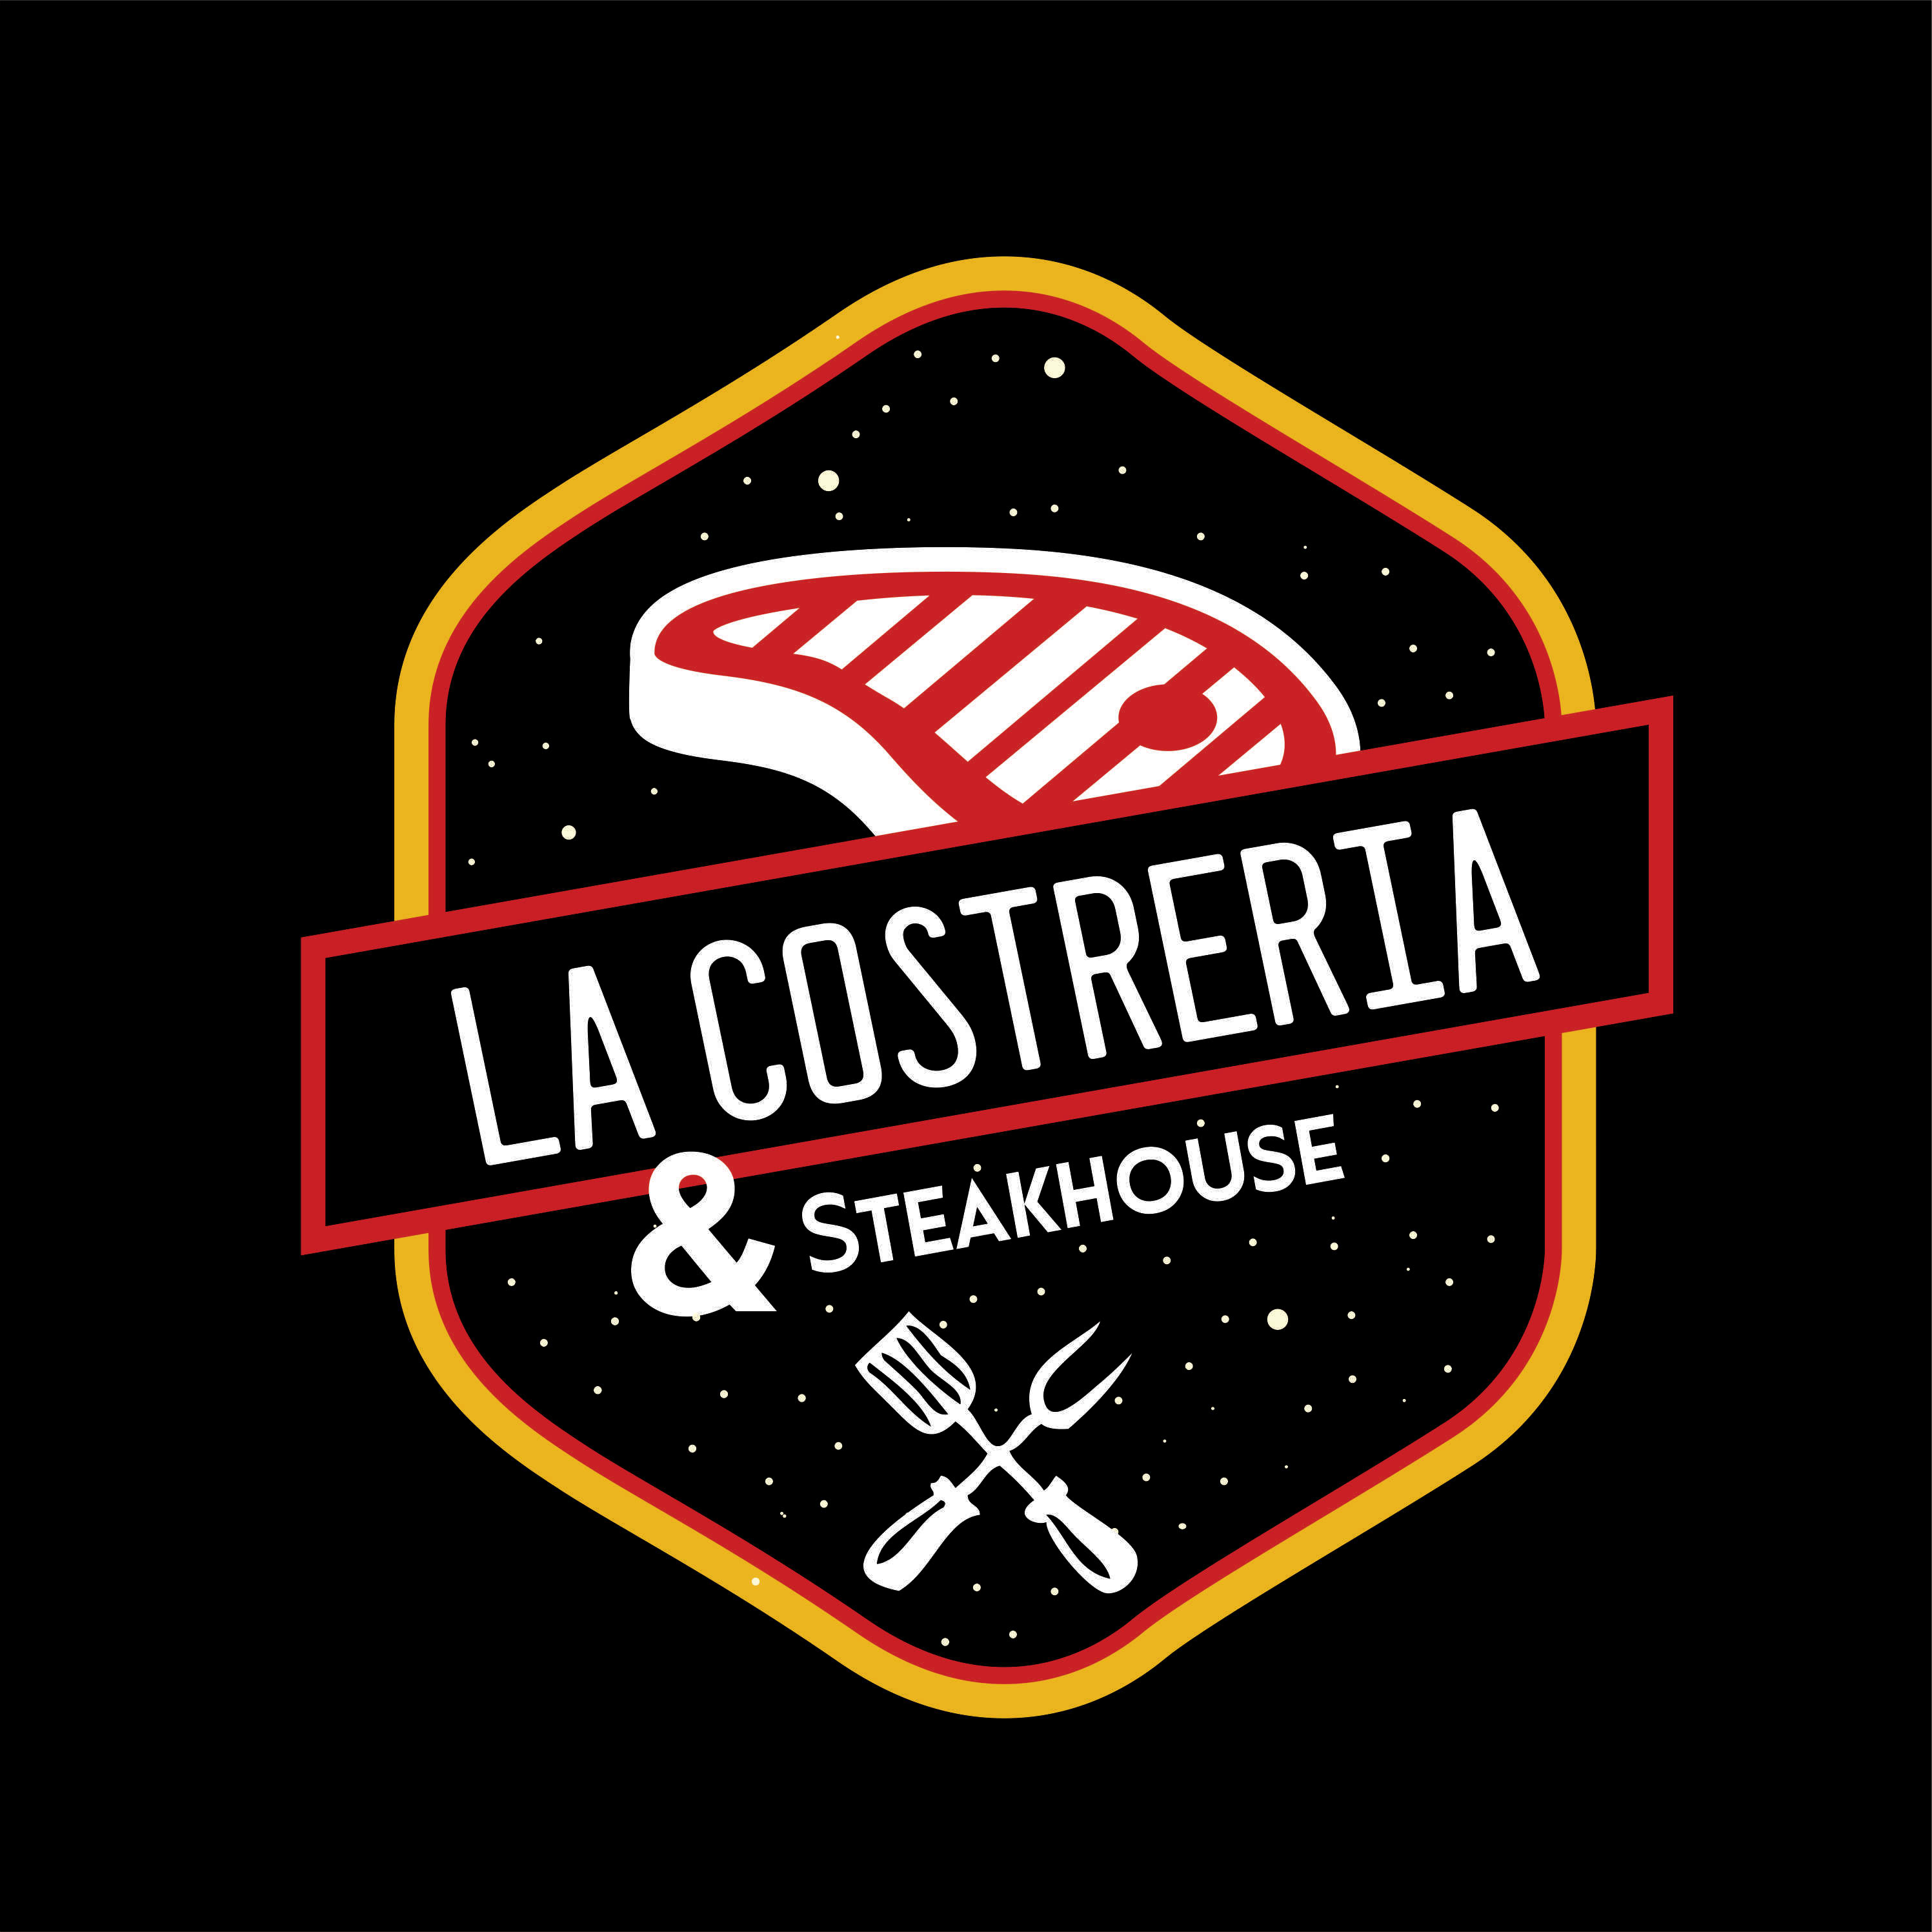 La Costreria & Steakhouse